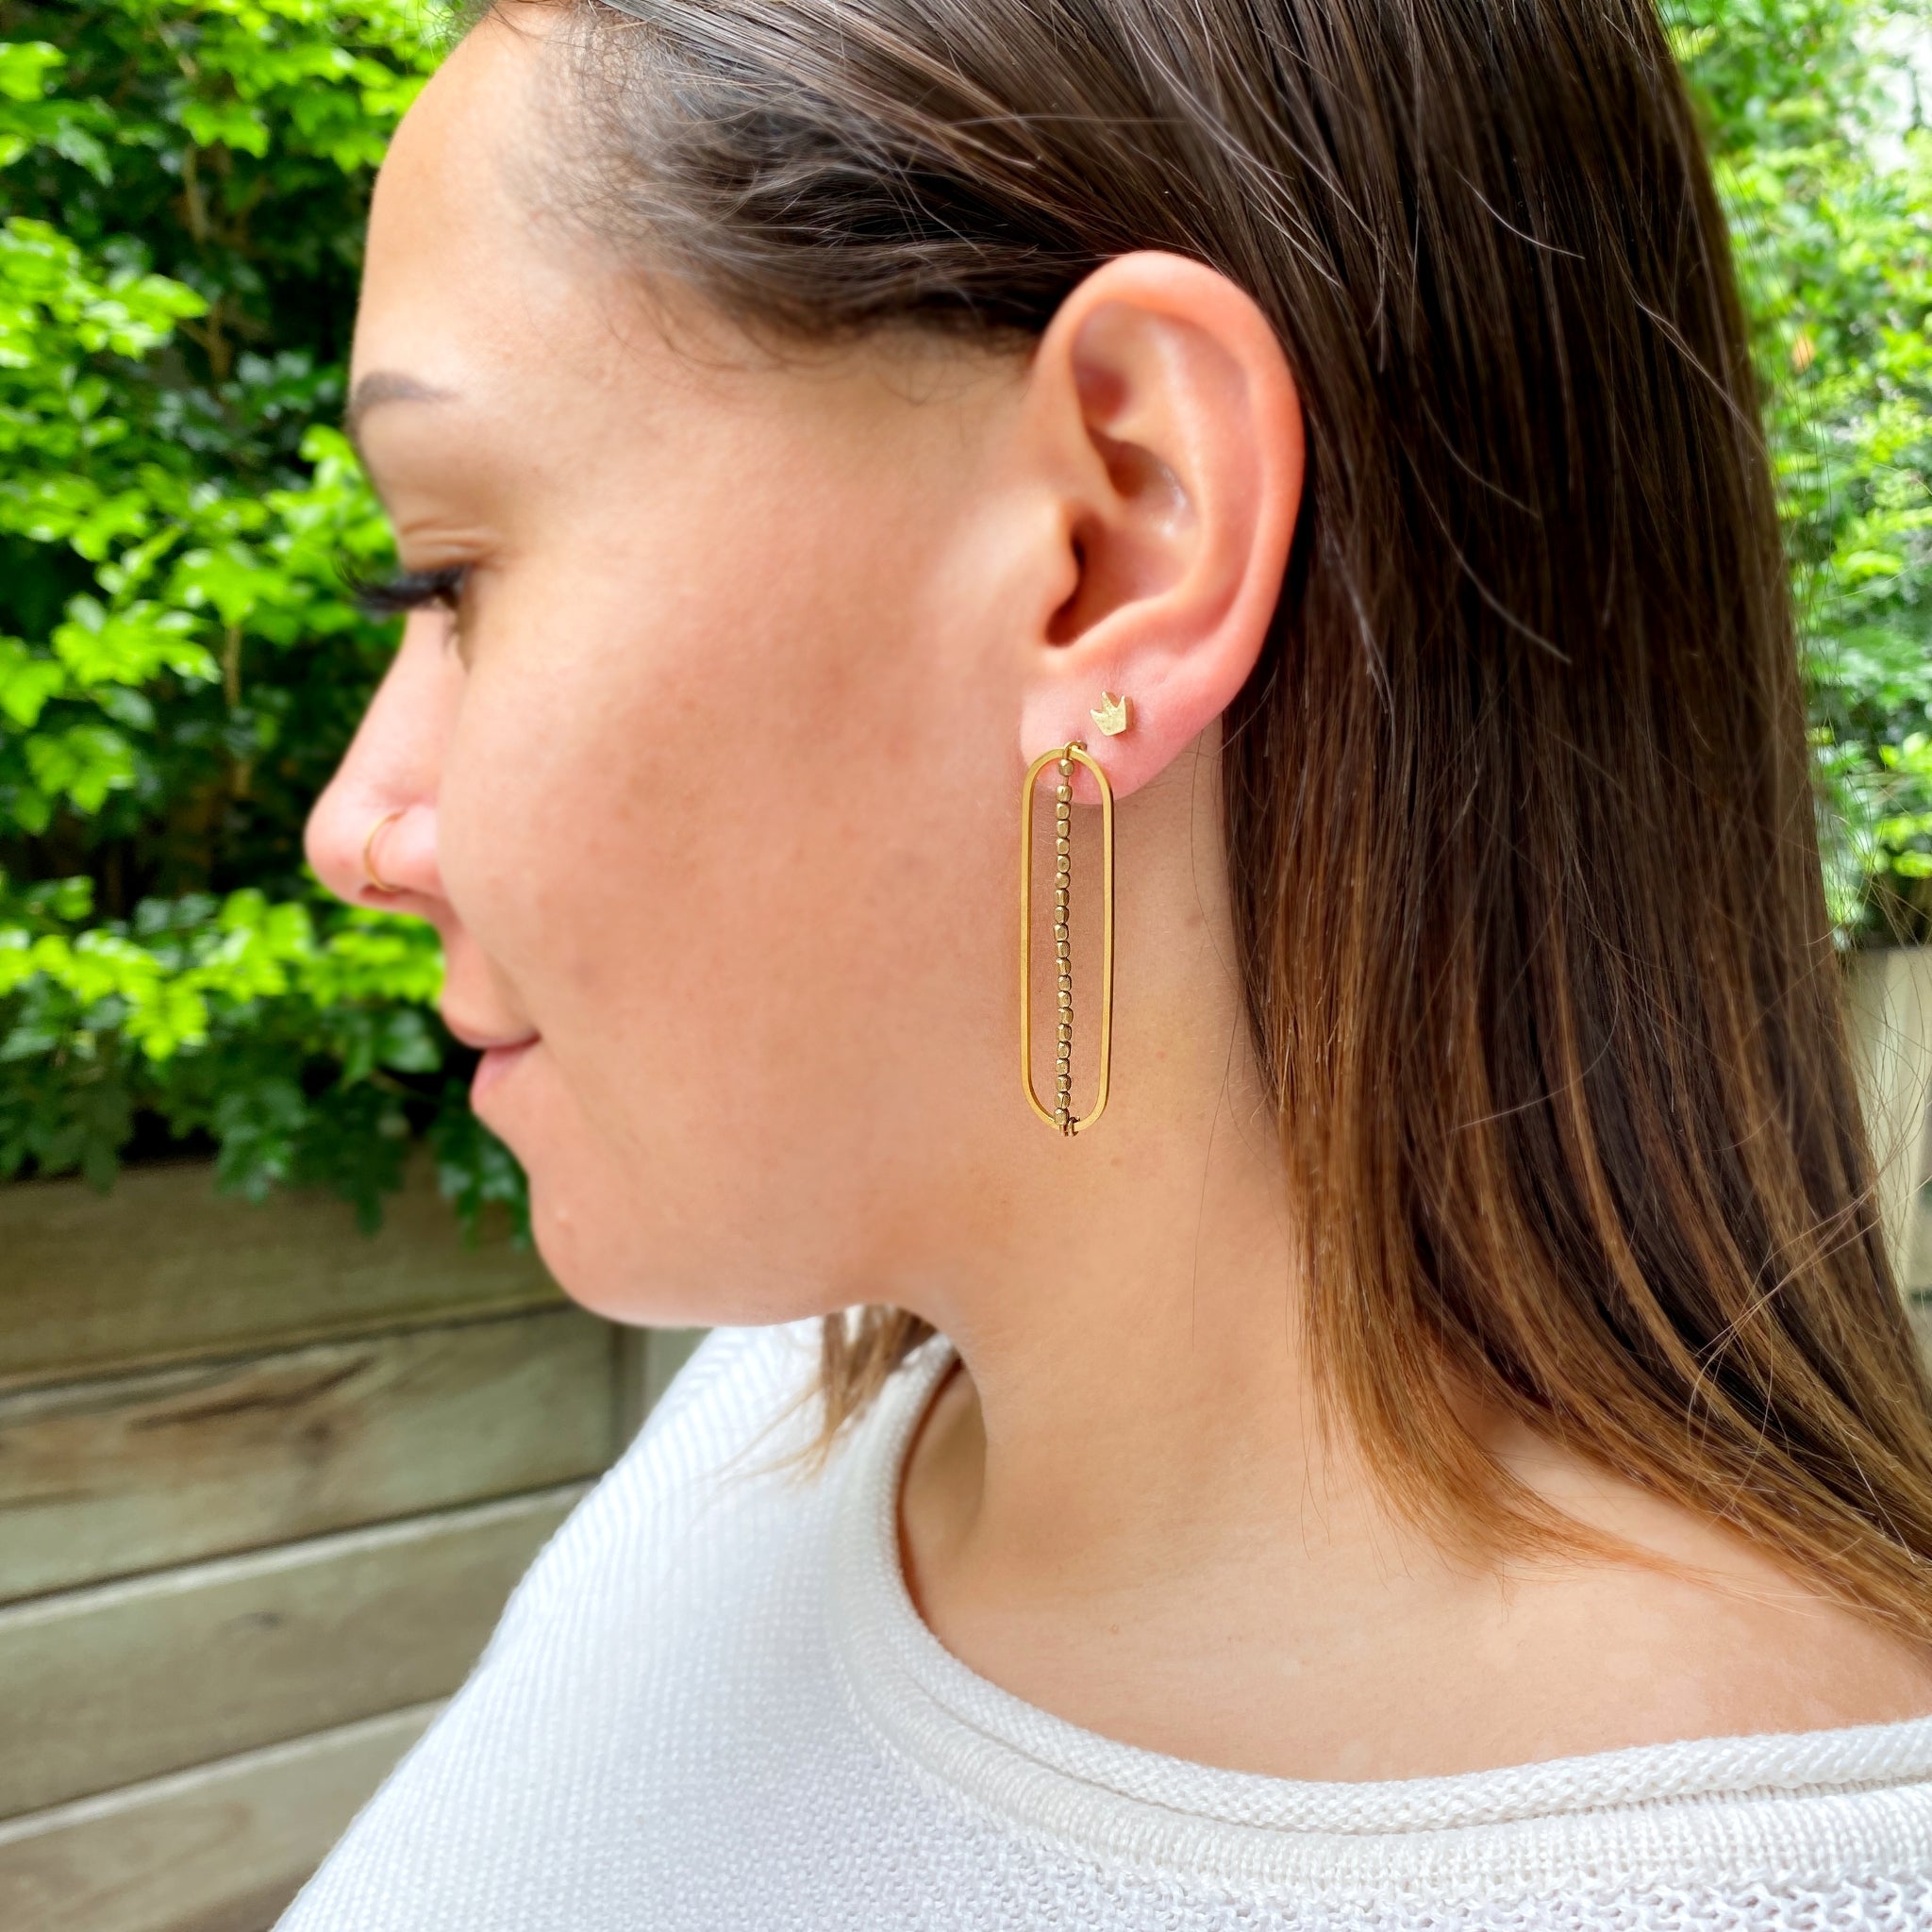 Nicolette earrings